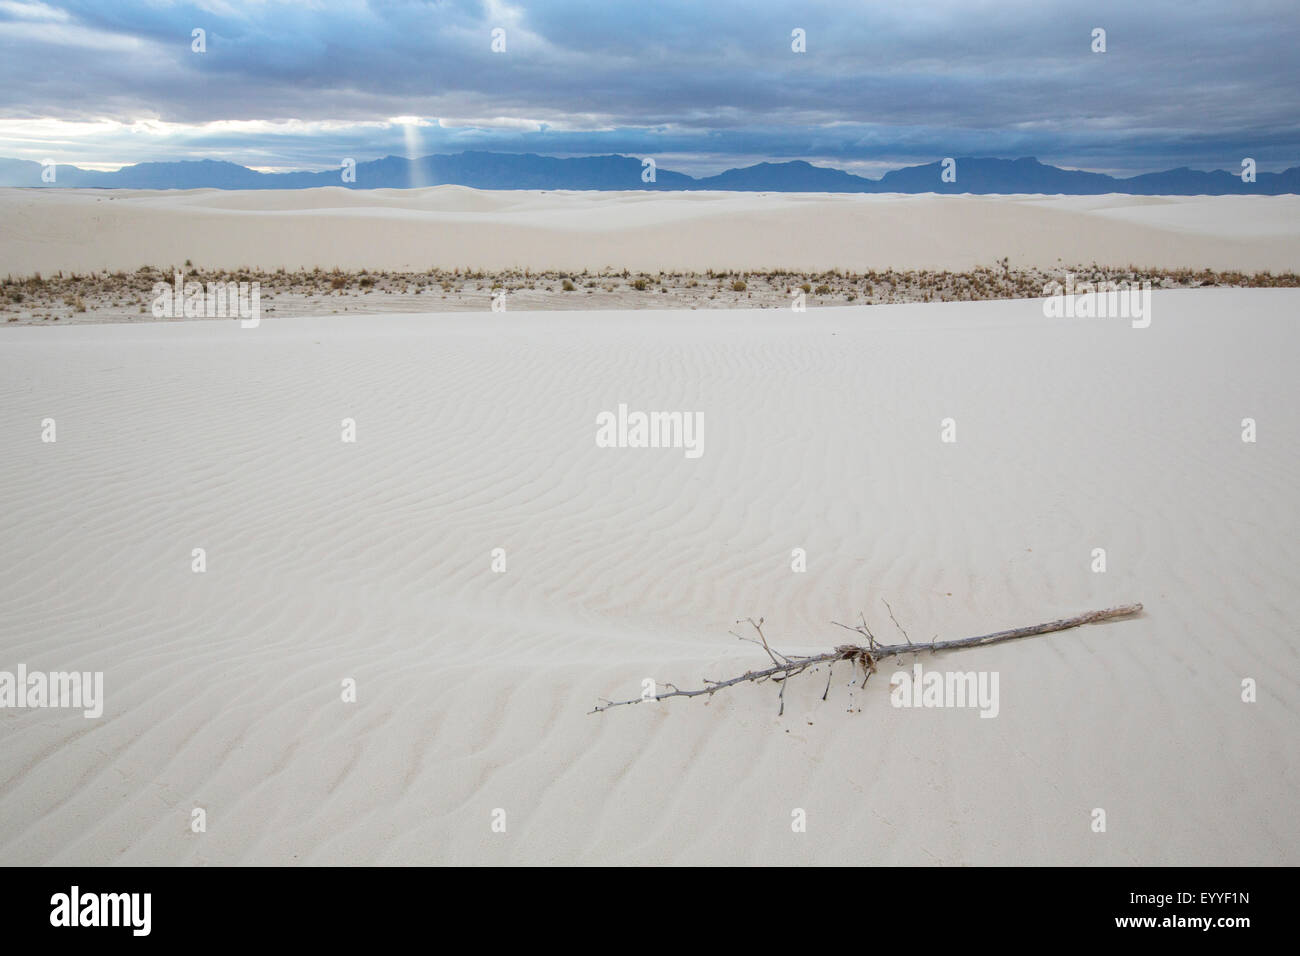 Direction générale de la jetée sur la dune de sable, White Sands National Monument, New Mexico, United States Banque D'Images